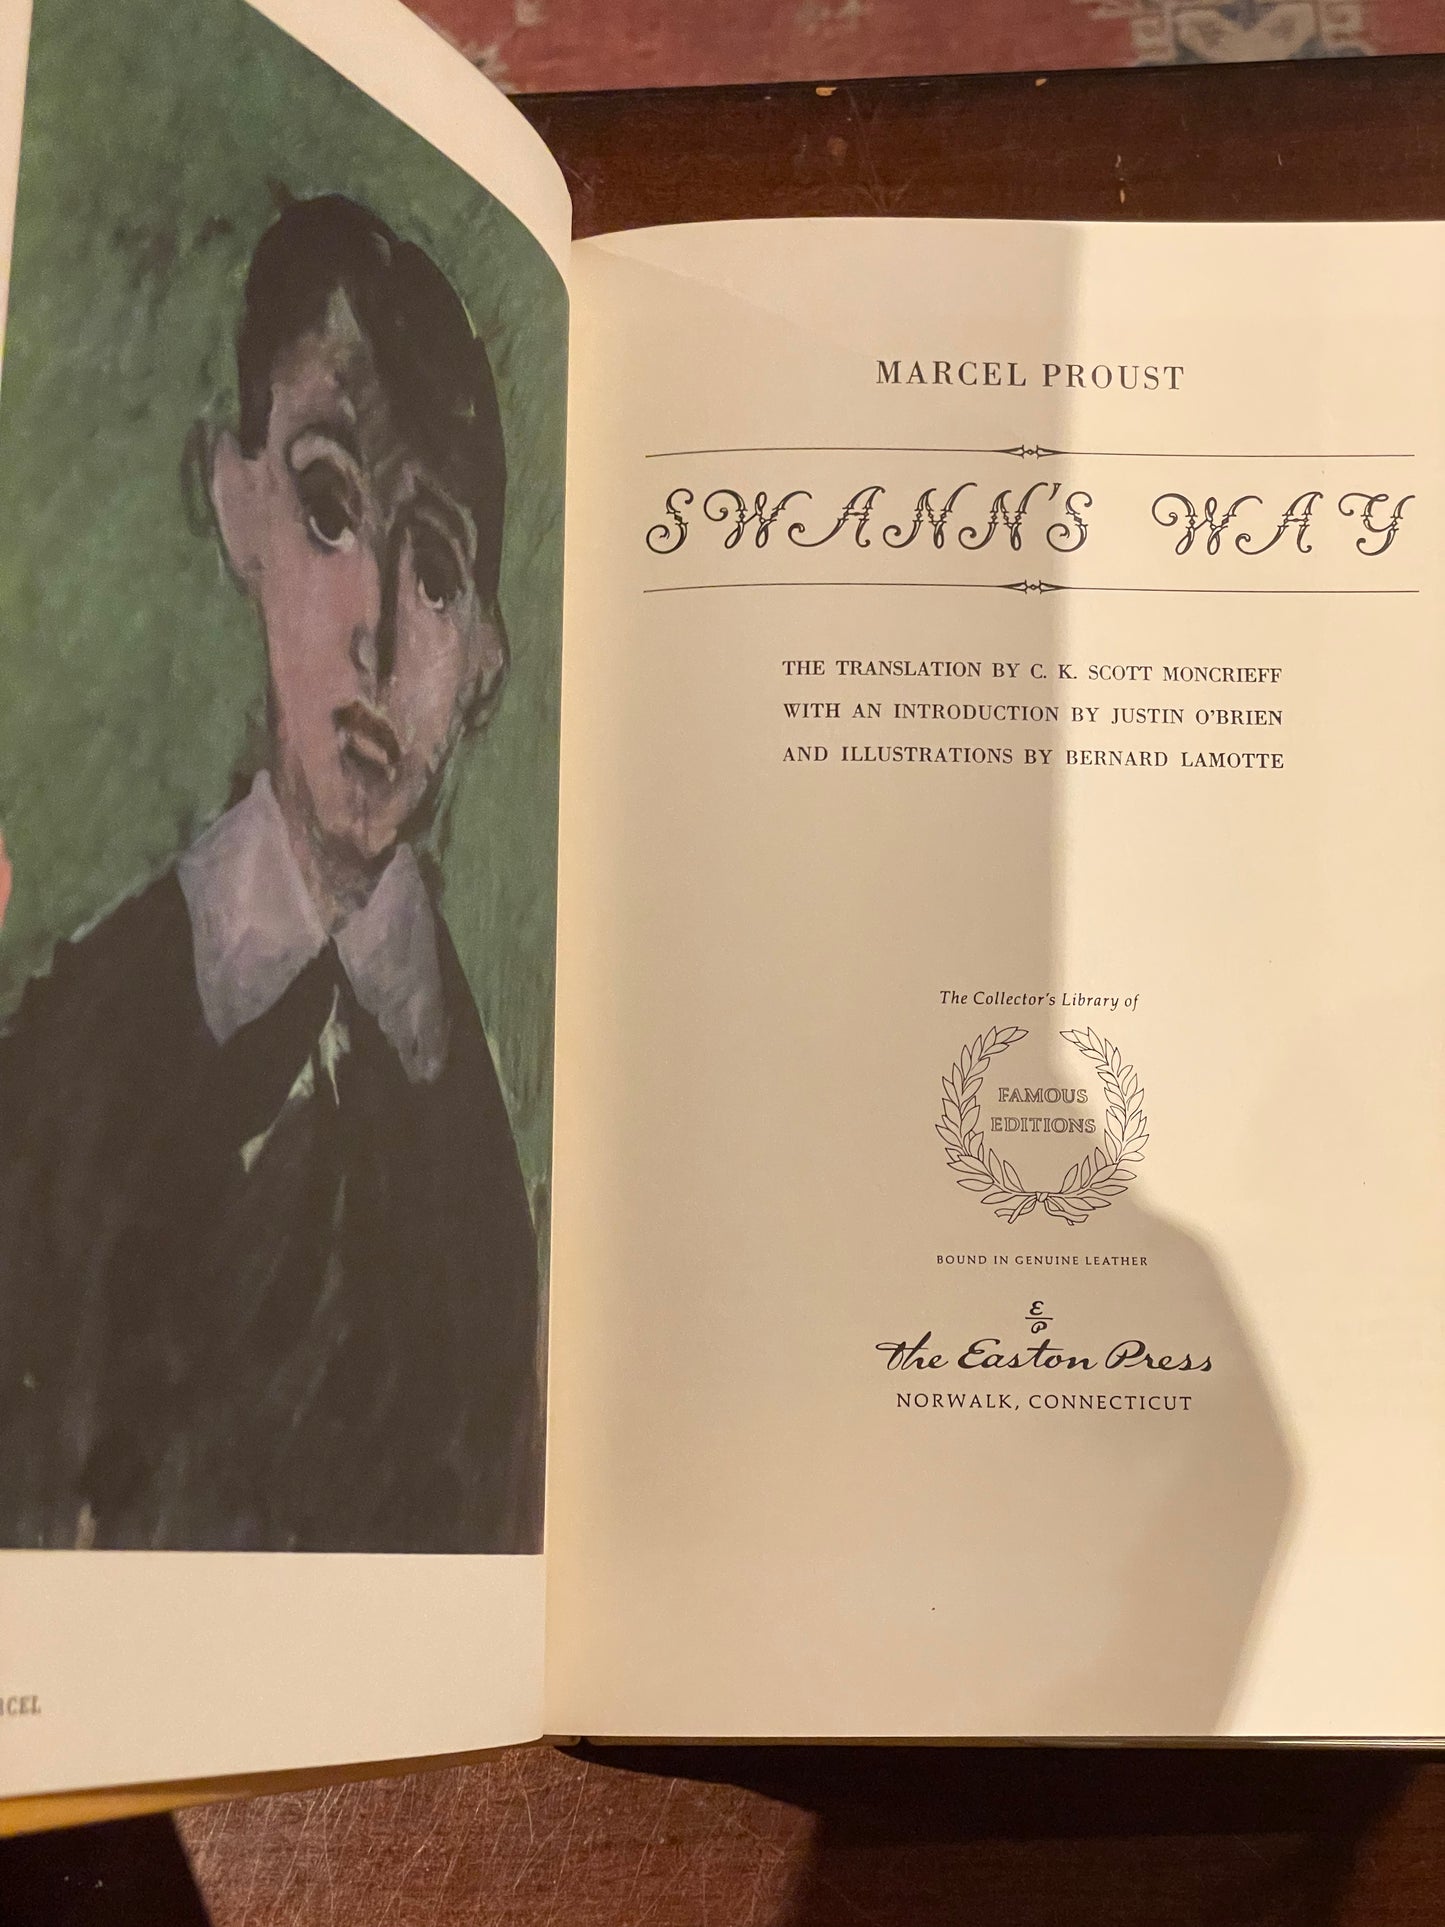 Swann’s Way by Marcel Proust (Easton Press)